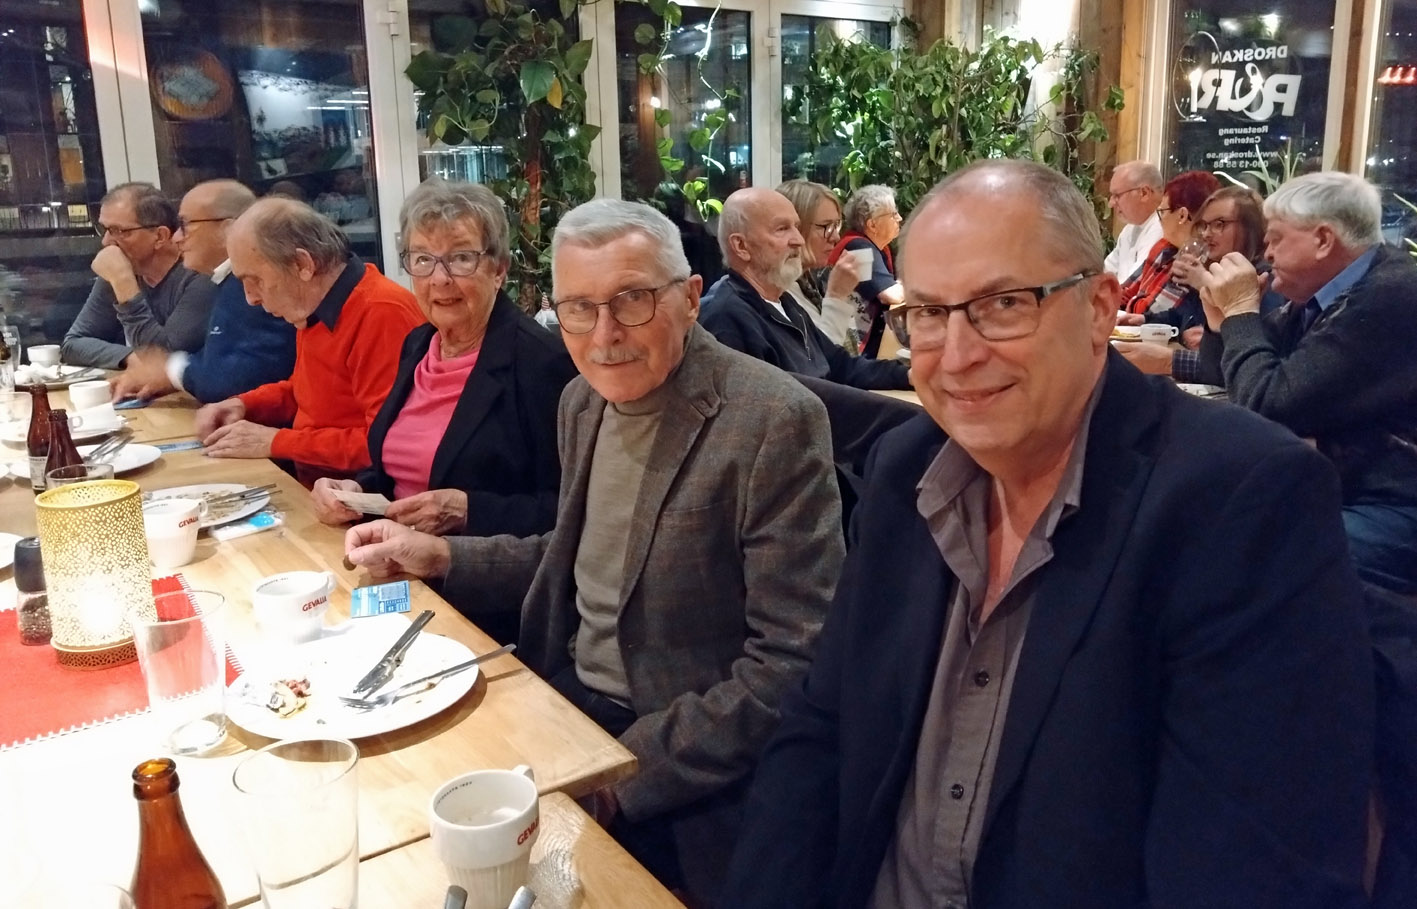 Psoriasisförbundet Umeå lokalavdelning avslutade verksamhetsåret med höstfest på restaurang, närmast kameran från vänster Maj-Britt Johansson, Jussi Johansson och Lars Elinge.